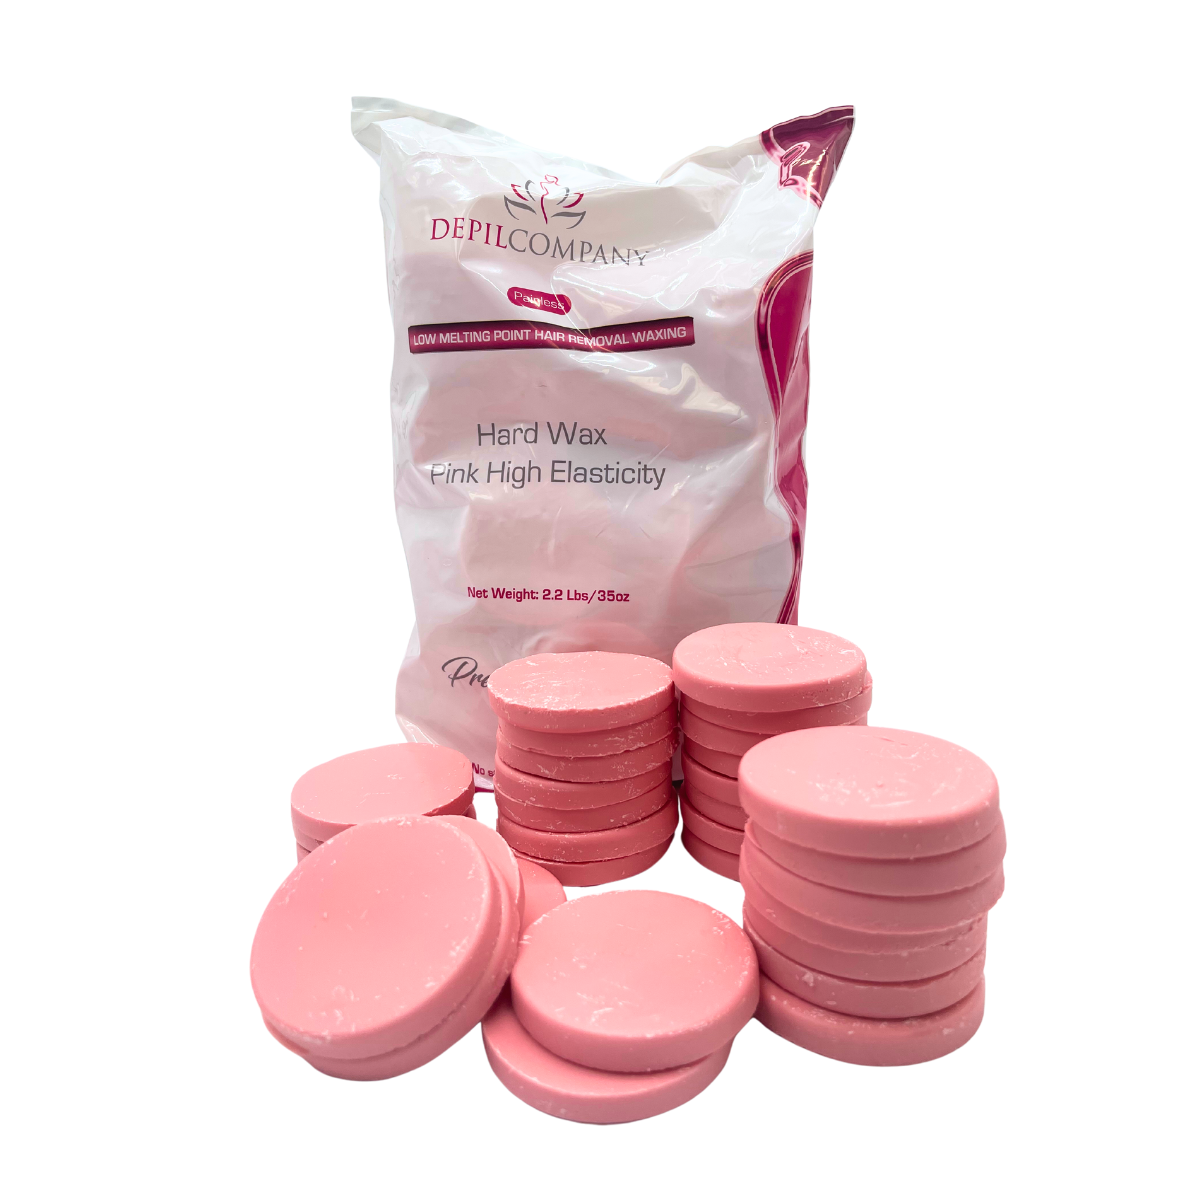 Depilcompany Hard Wax Pink – Cera dura profesional de alto rendimiento con ingredientes activos especiales – 2.2 lbs. (20 UND)